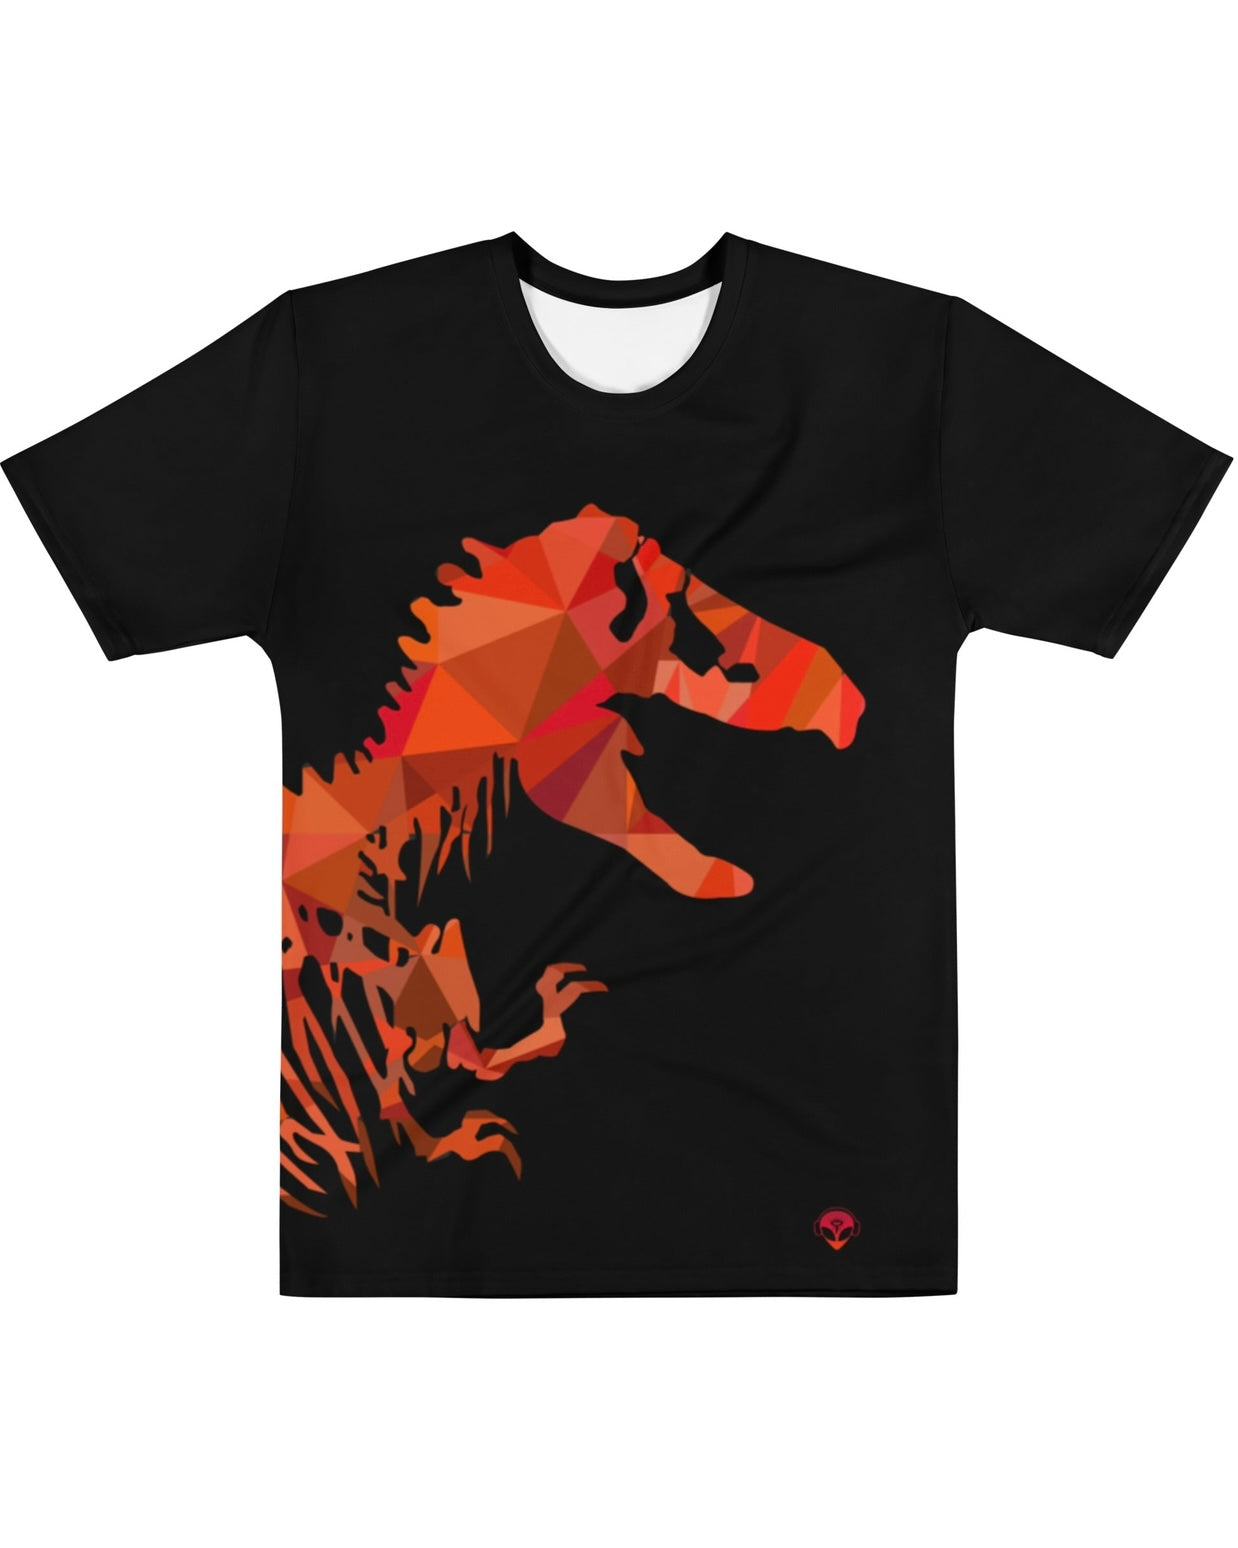 Dubstep Rex T-Shirt, T-Shirt, - One Stop Rave